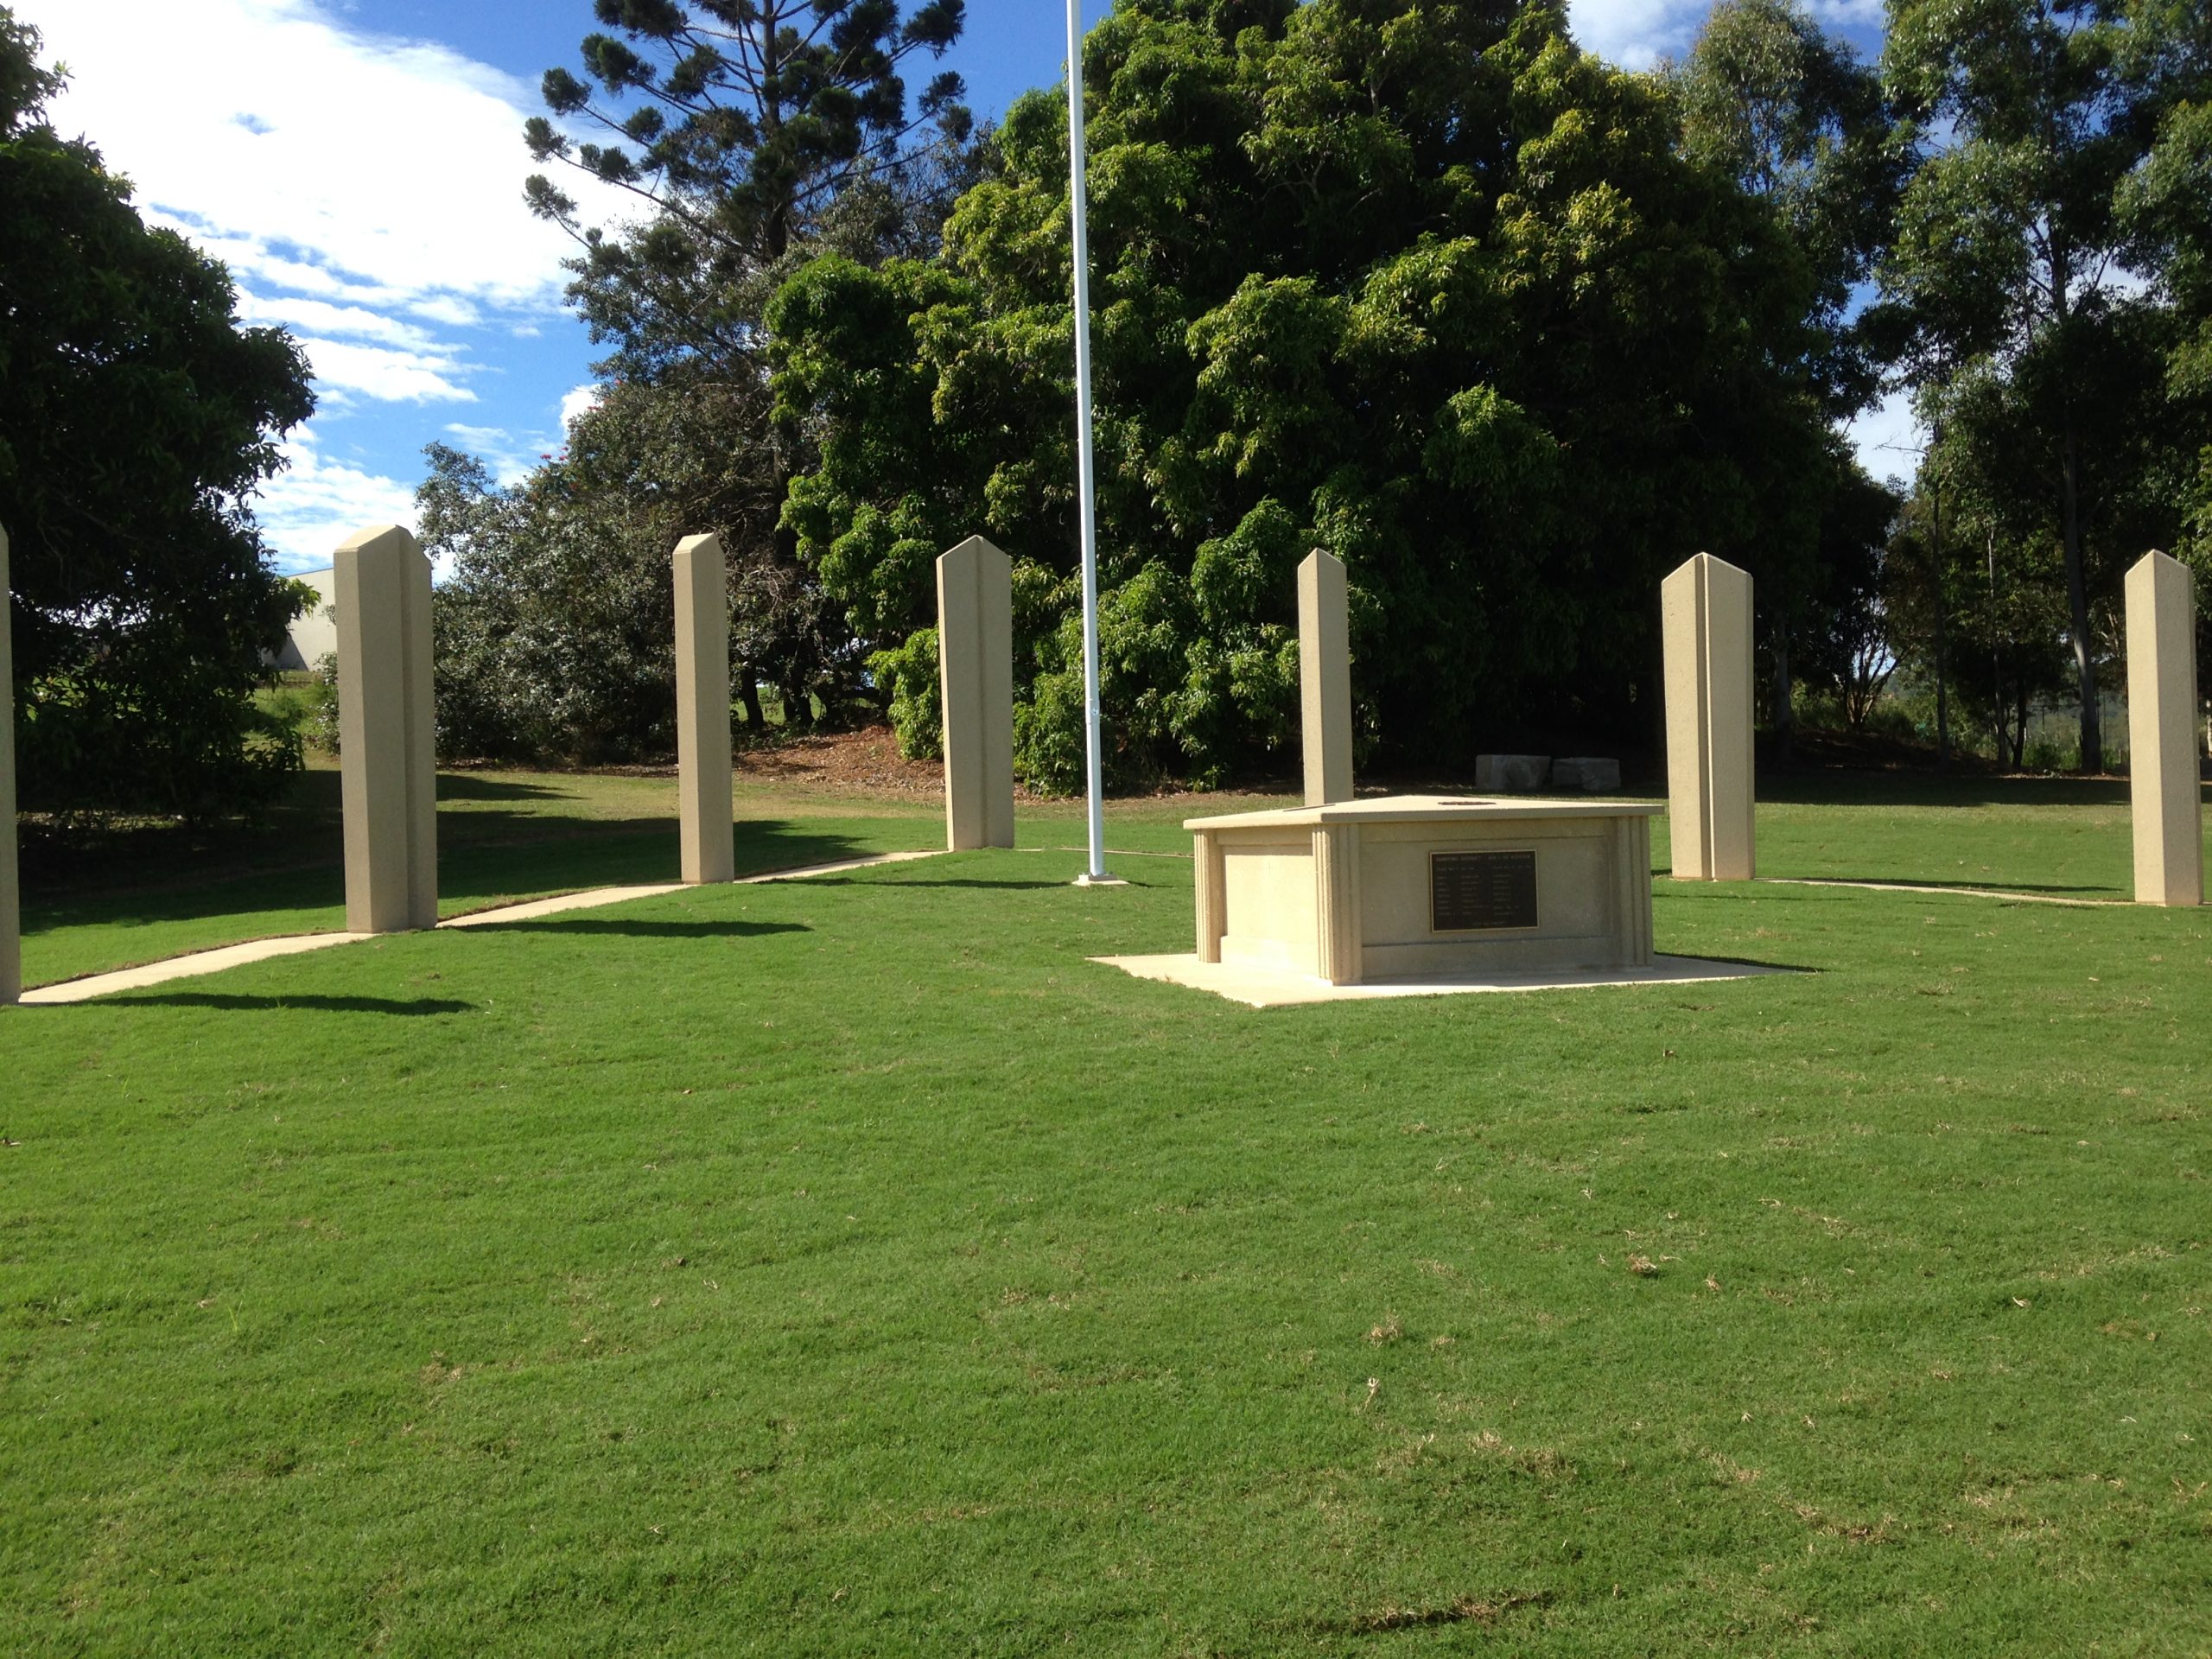 Inside War Memorial Grounds Built Using Precast Concrete